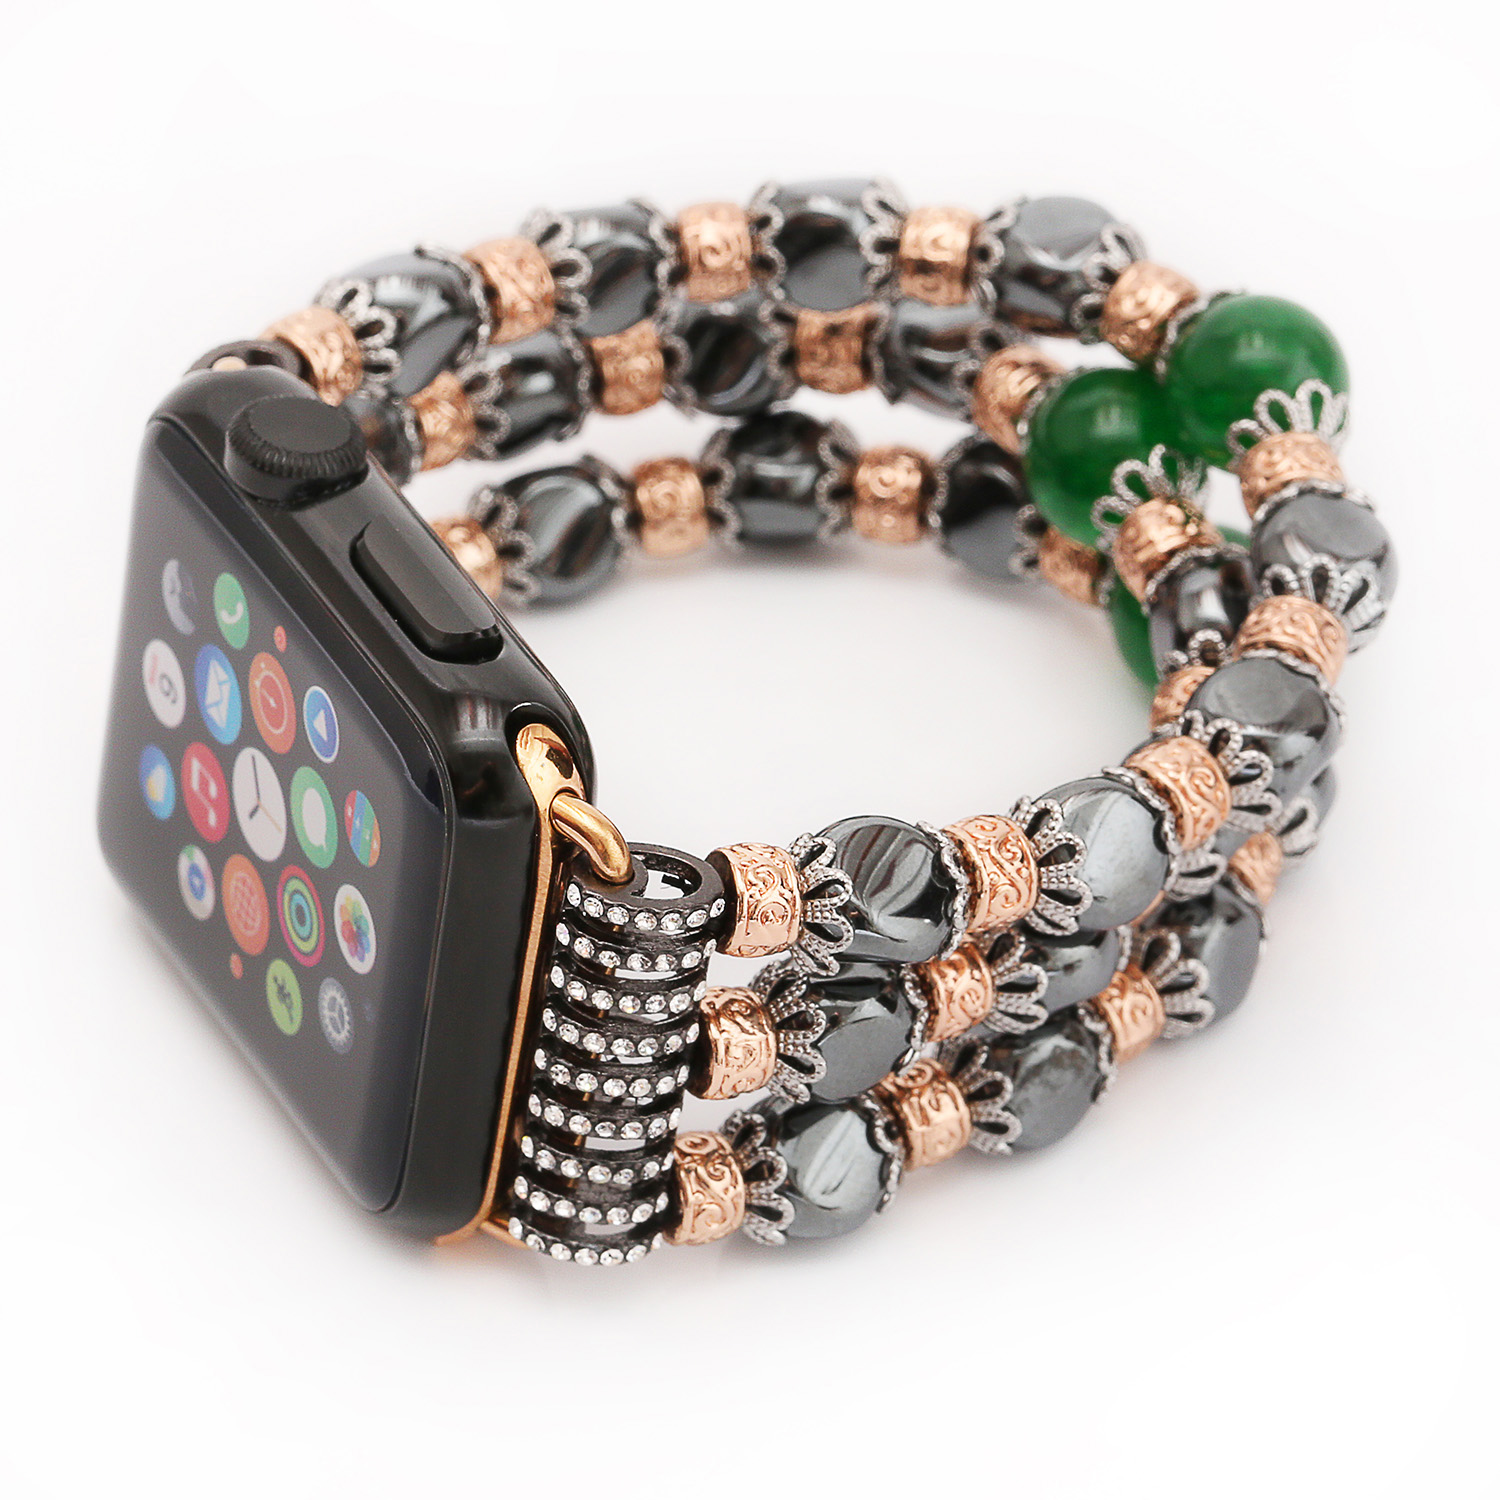 Schöne und beeindruckende handgefertigte Hämatit Bead Apple Watch Band